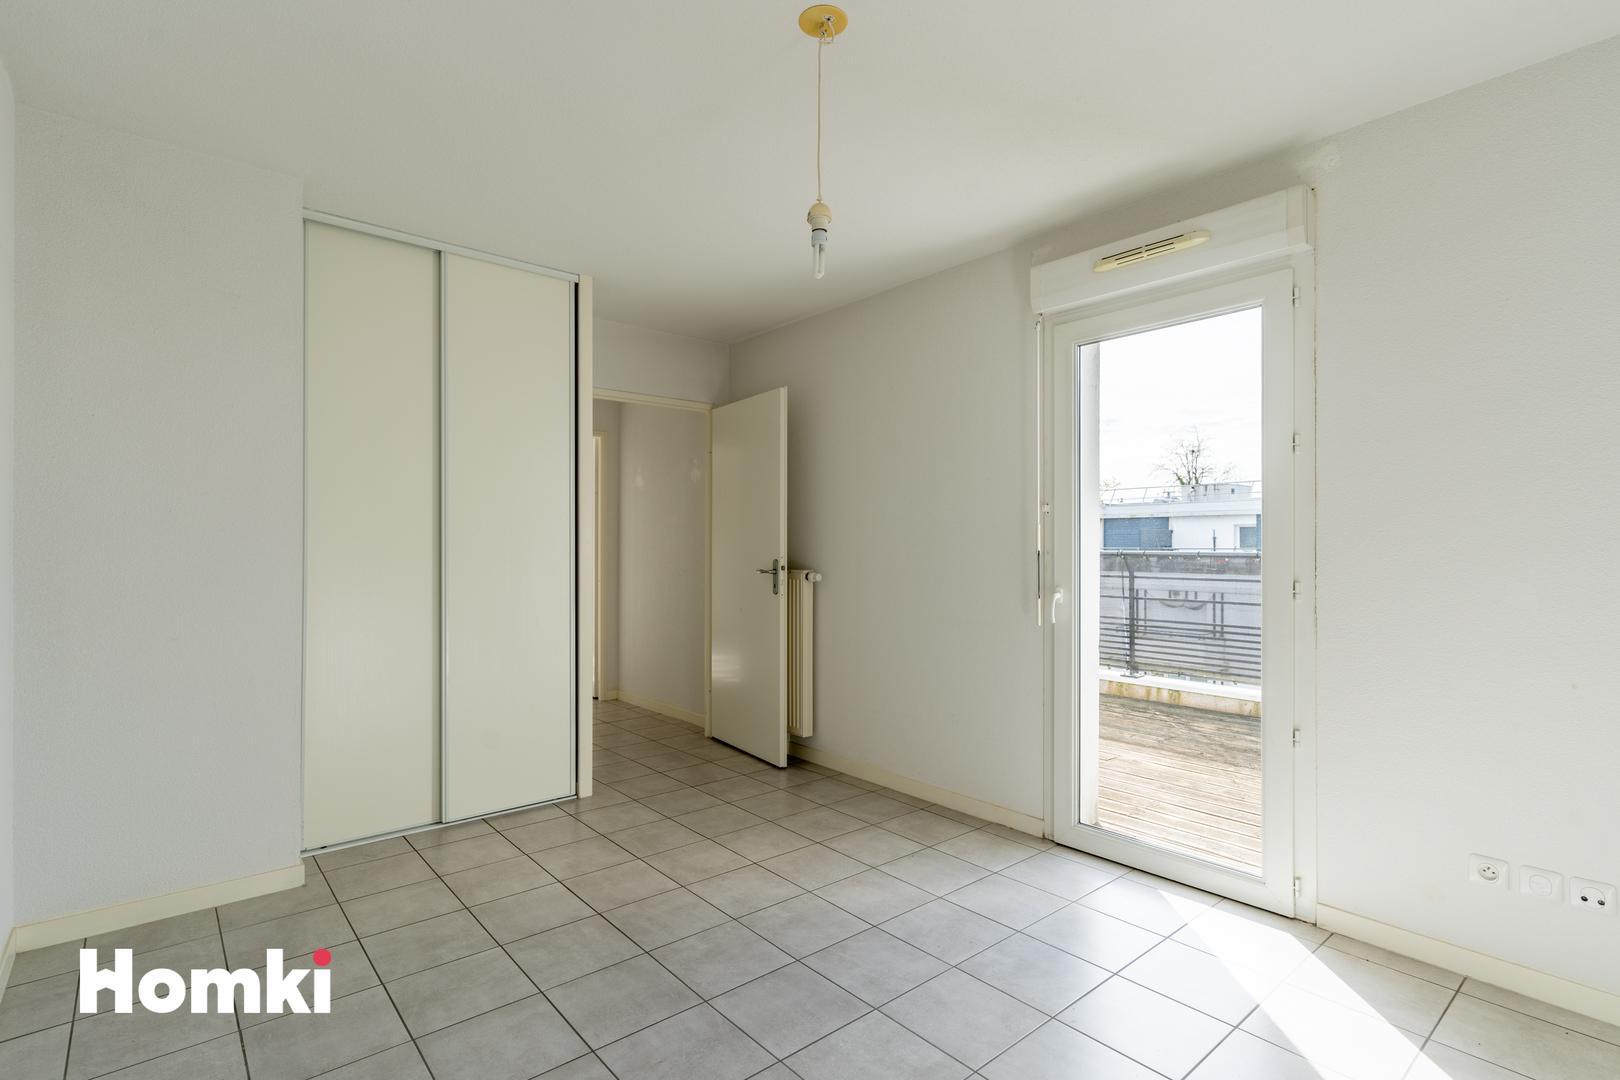 Homki - Vente Appartement  de 84.0 m² à Le Bouscat 33110